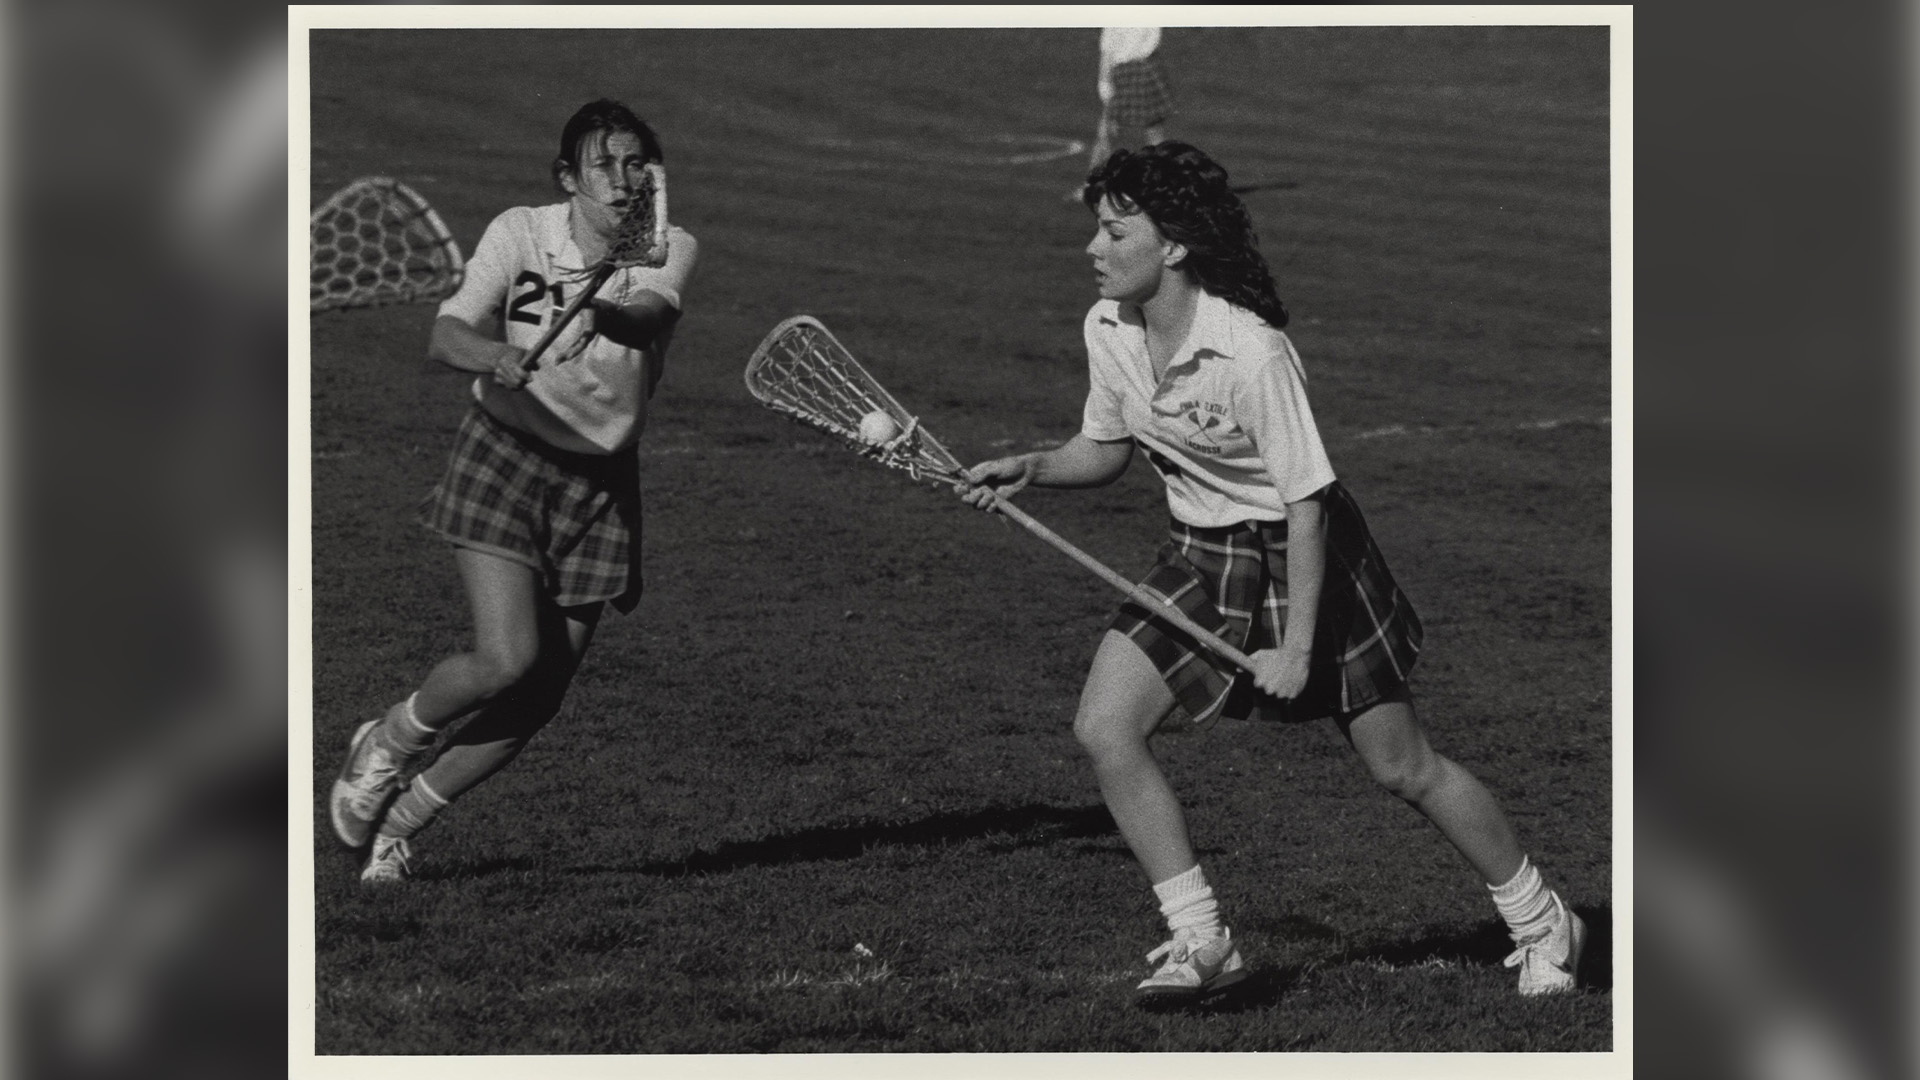 Women’s lacrosse circa 1980s